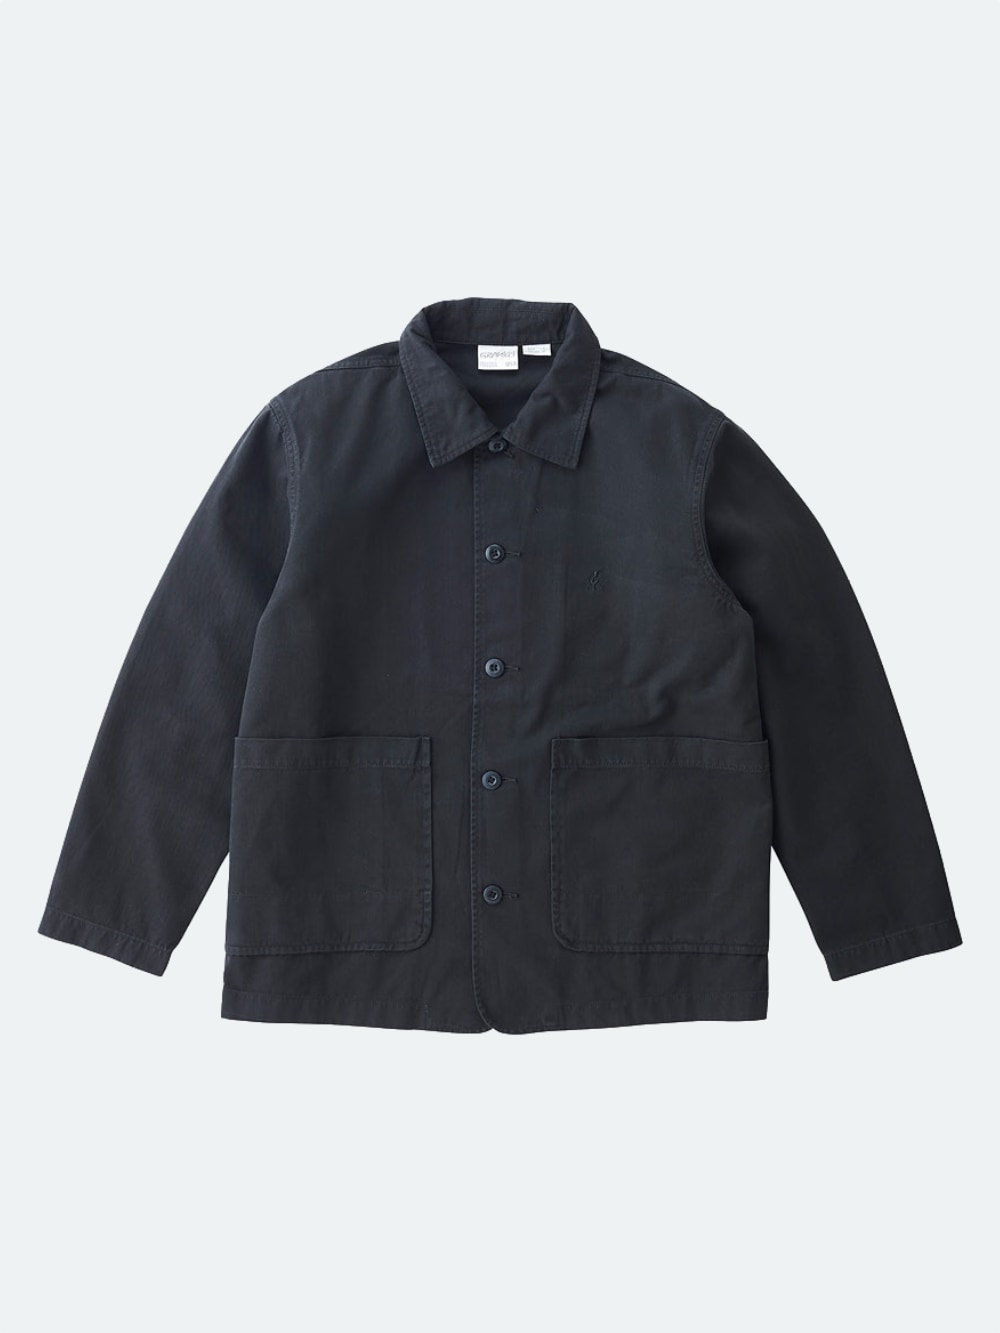 Gramicci: Utility Jacket - Black | Gotengo Menswear